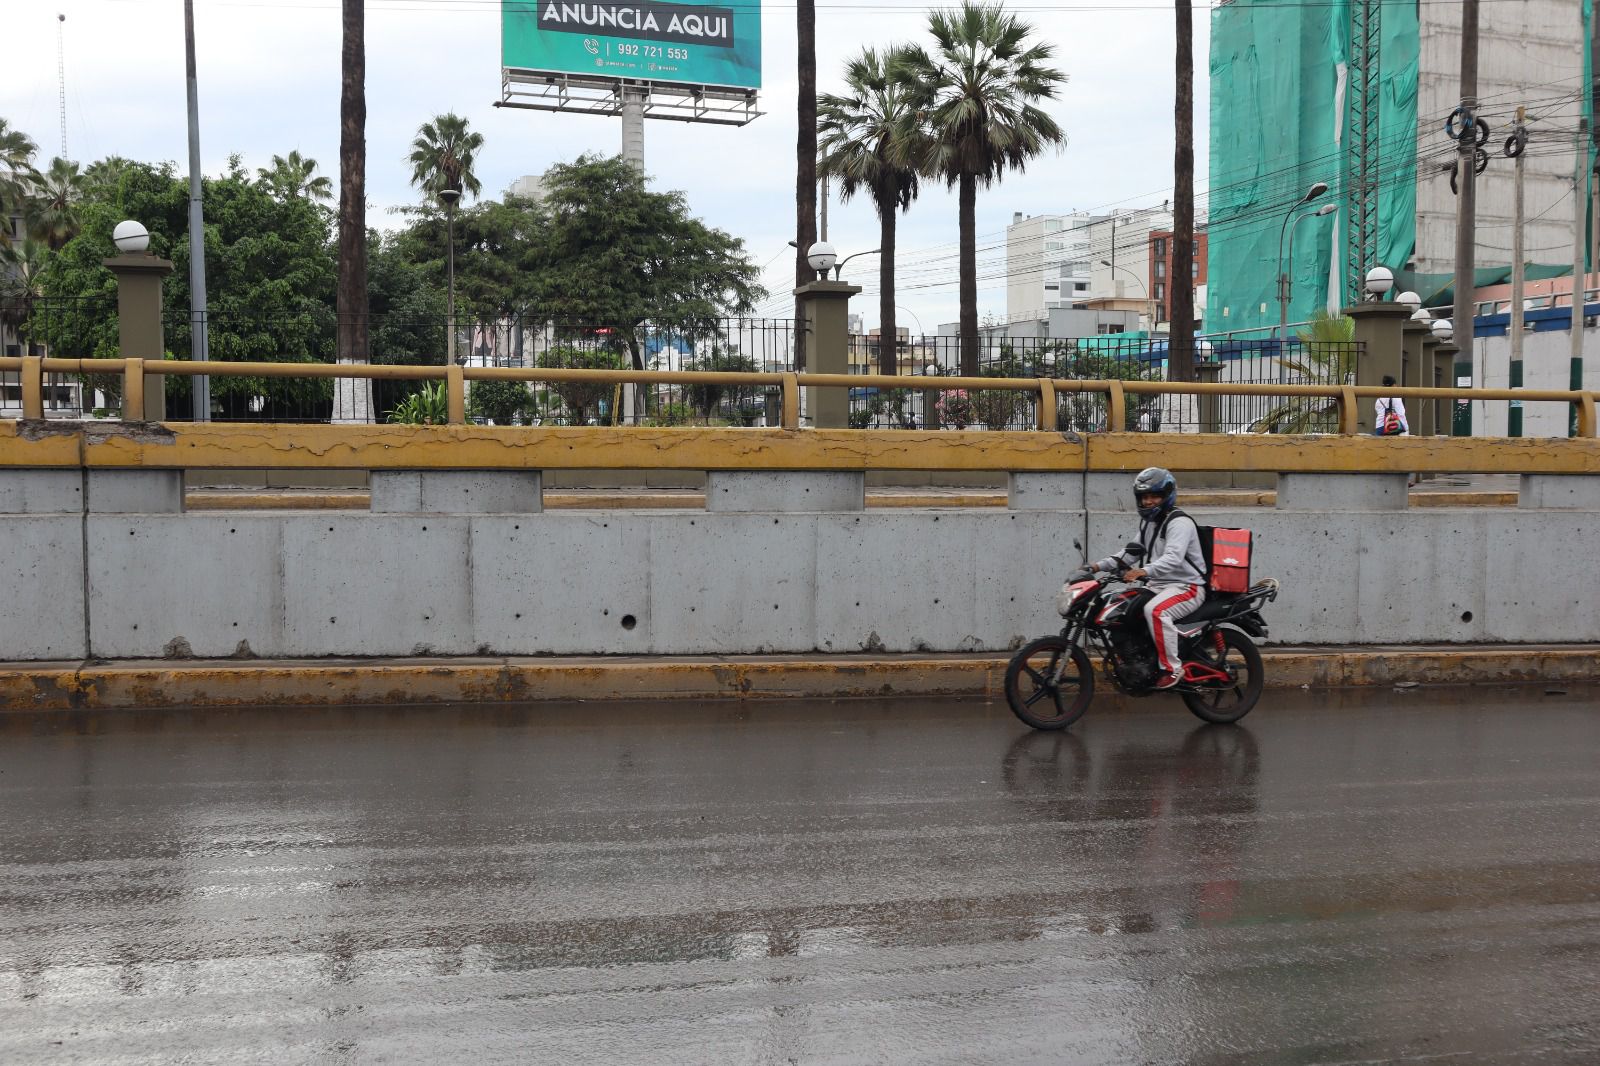 Labores de limpieza en puente de la Av. Brasil por parte de la Municipalidad de Lima. Trabajos para despejar vías tendrá una duración aproximada de 1 hora sin uso de maquinaria